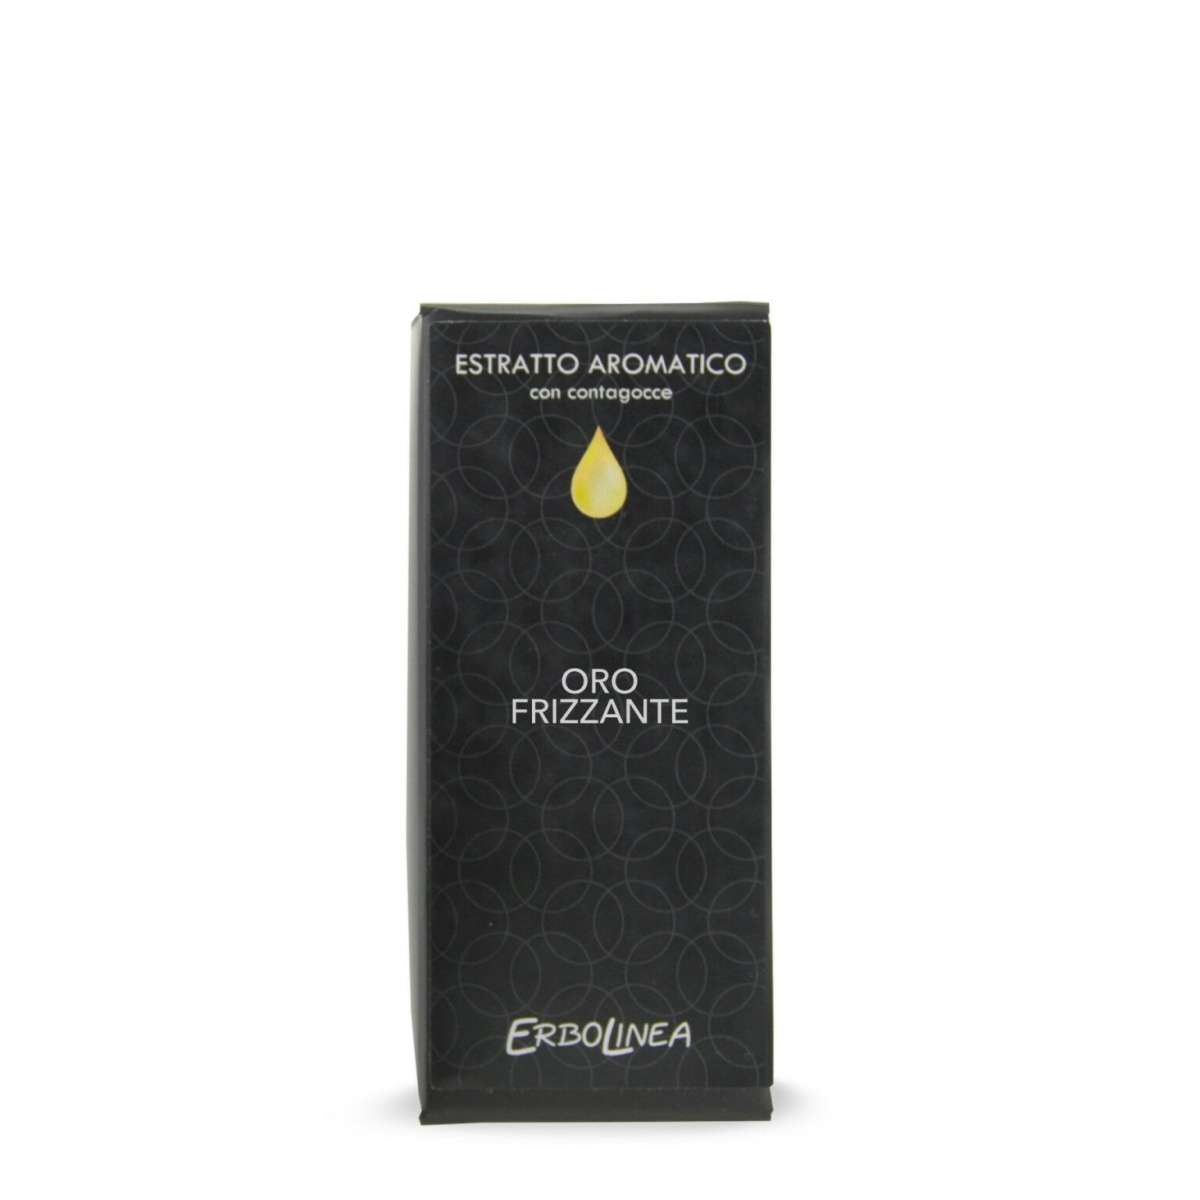 Immagine del prodotto Estratto Aromatico con Contagocce Oro Frizzante 10 ml | Erbolinea